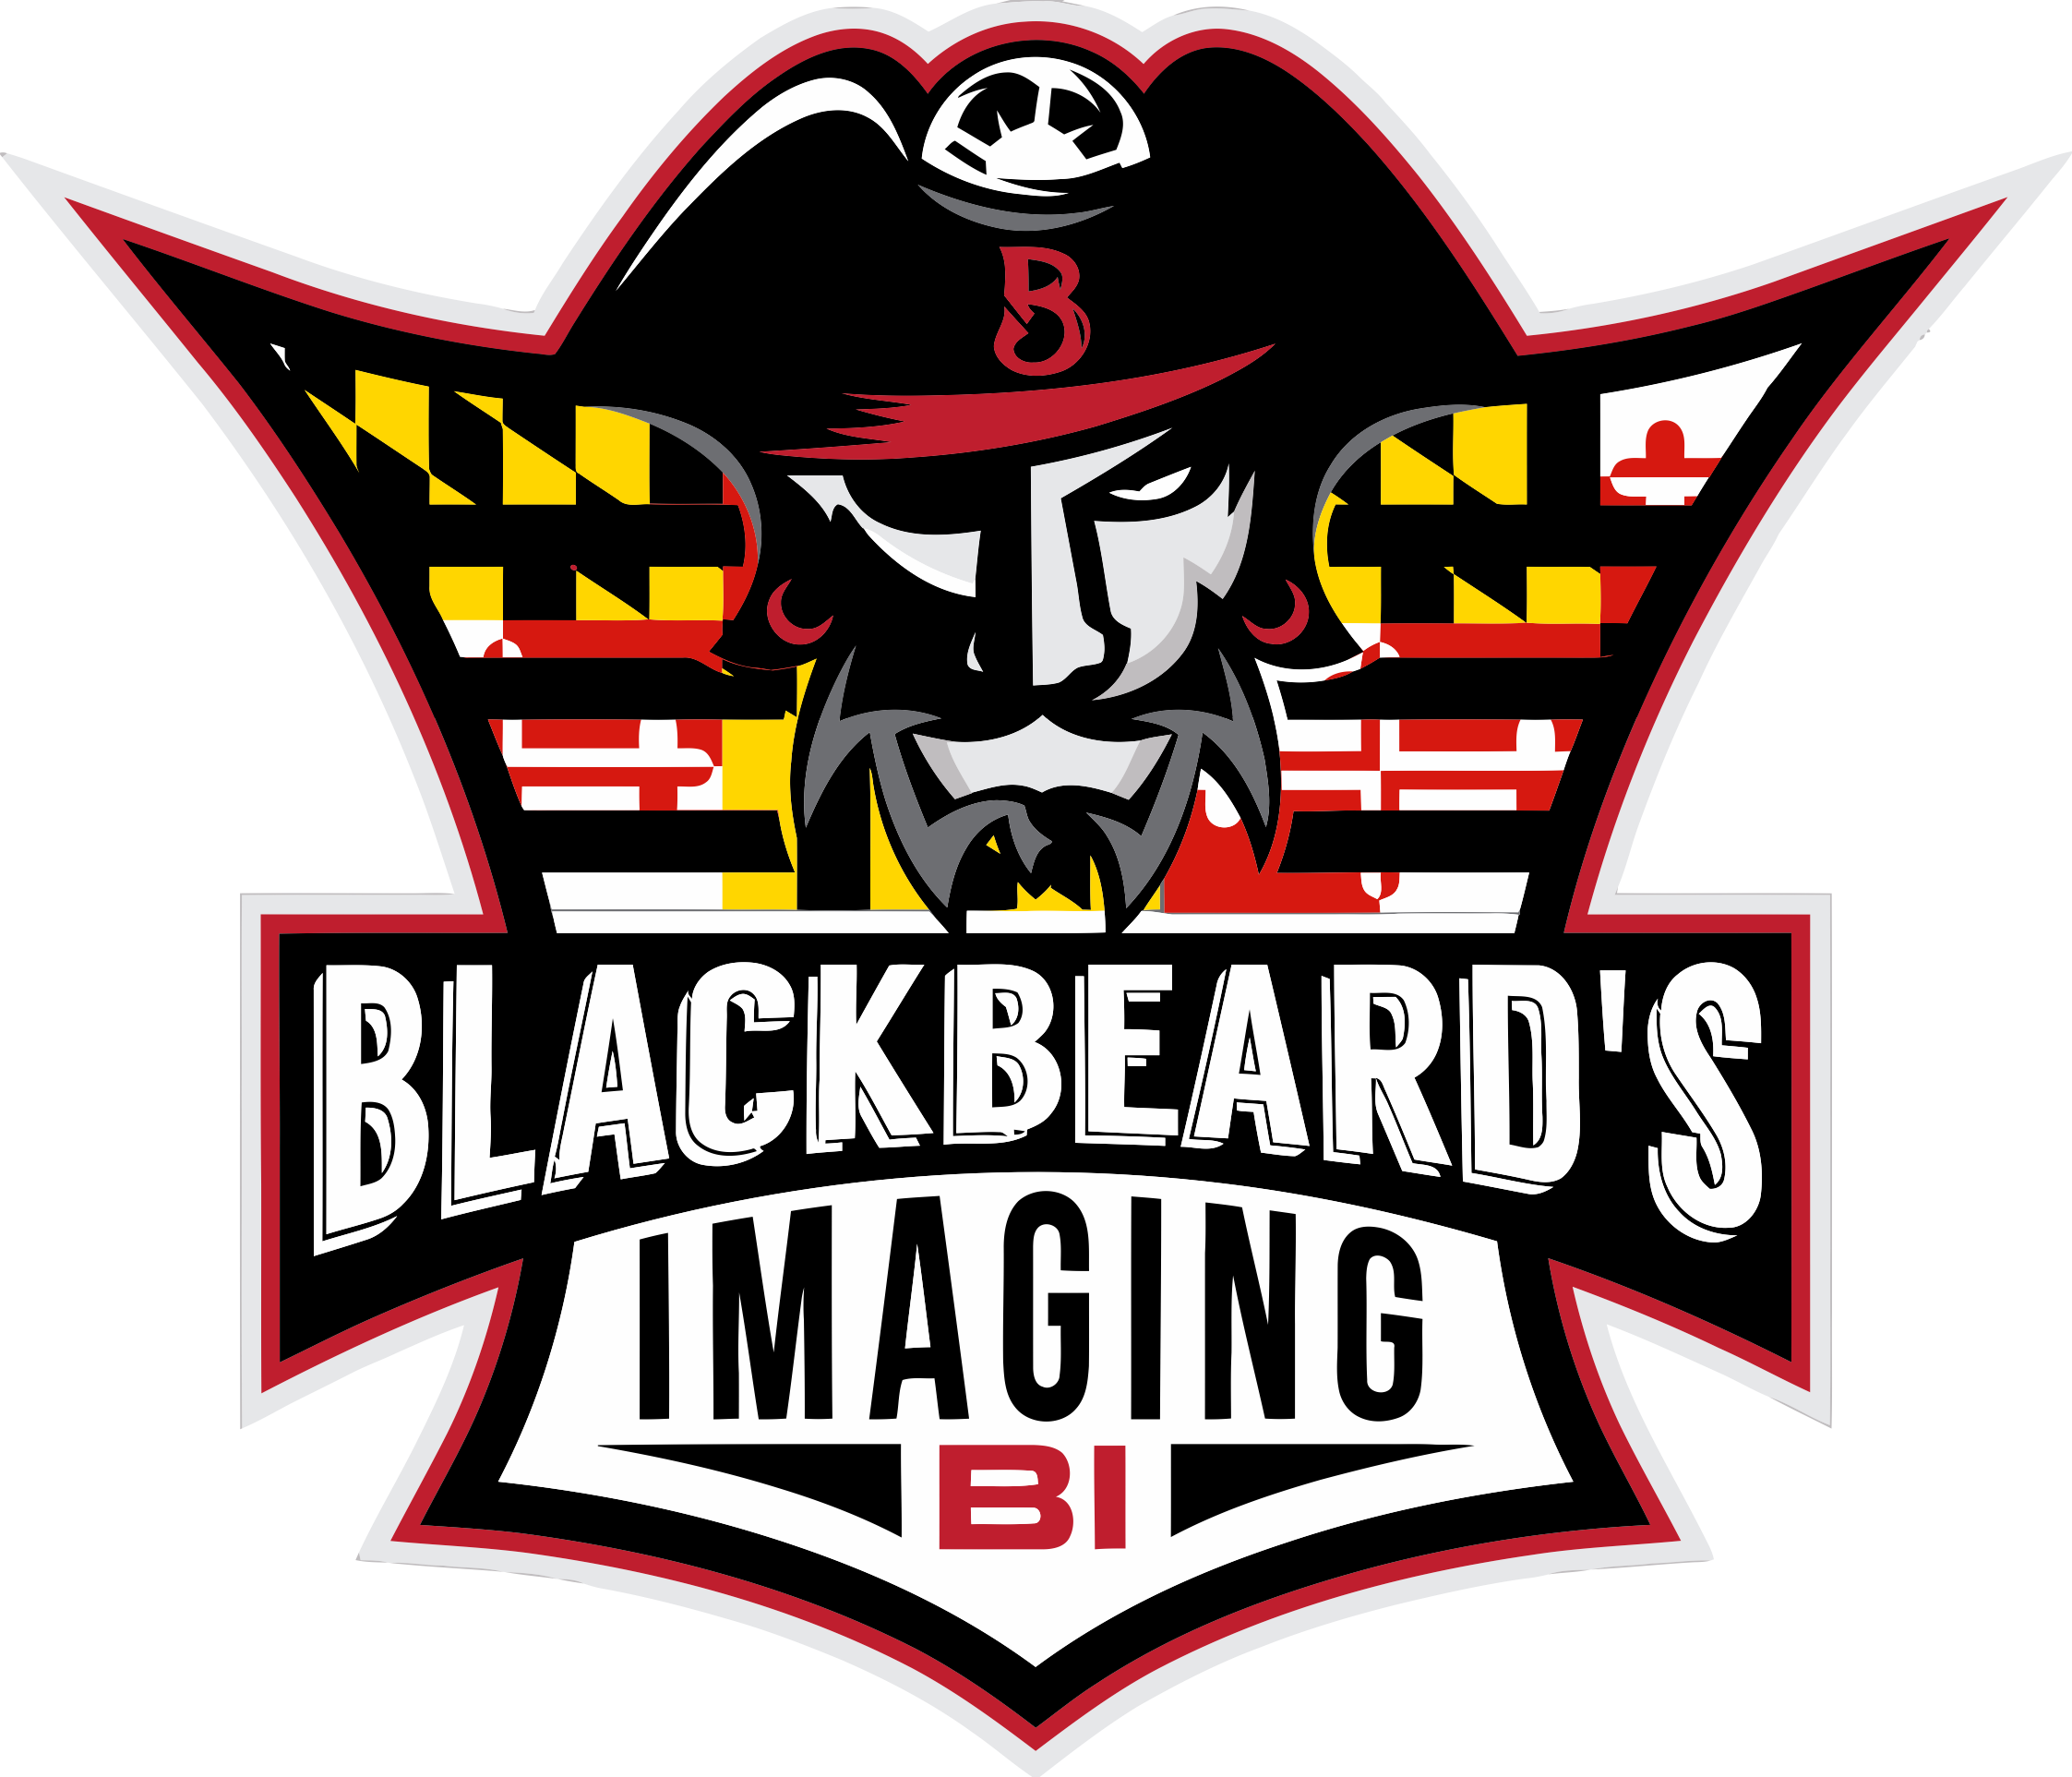 Blackbeard's Imaging